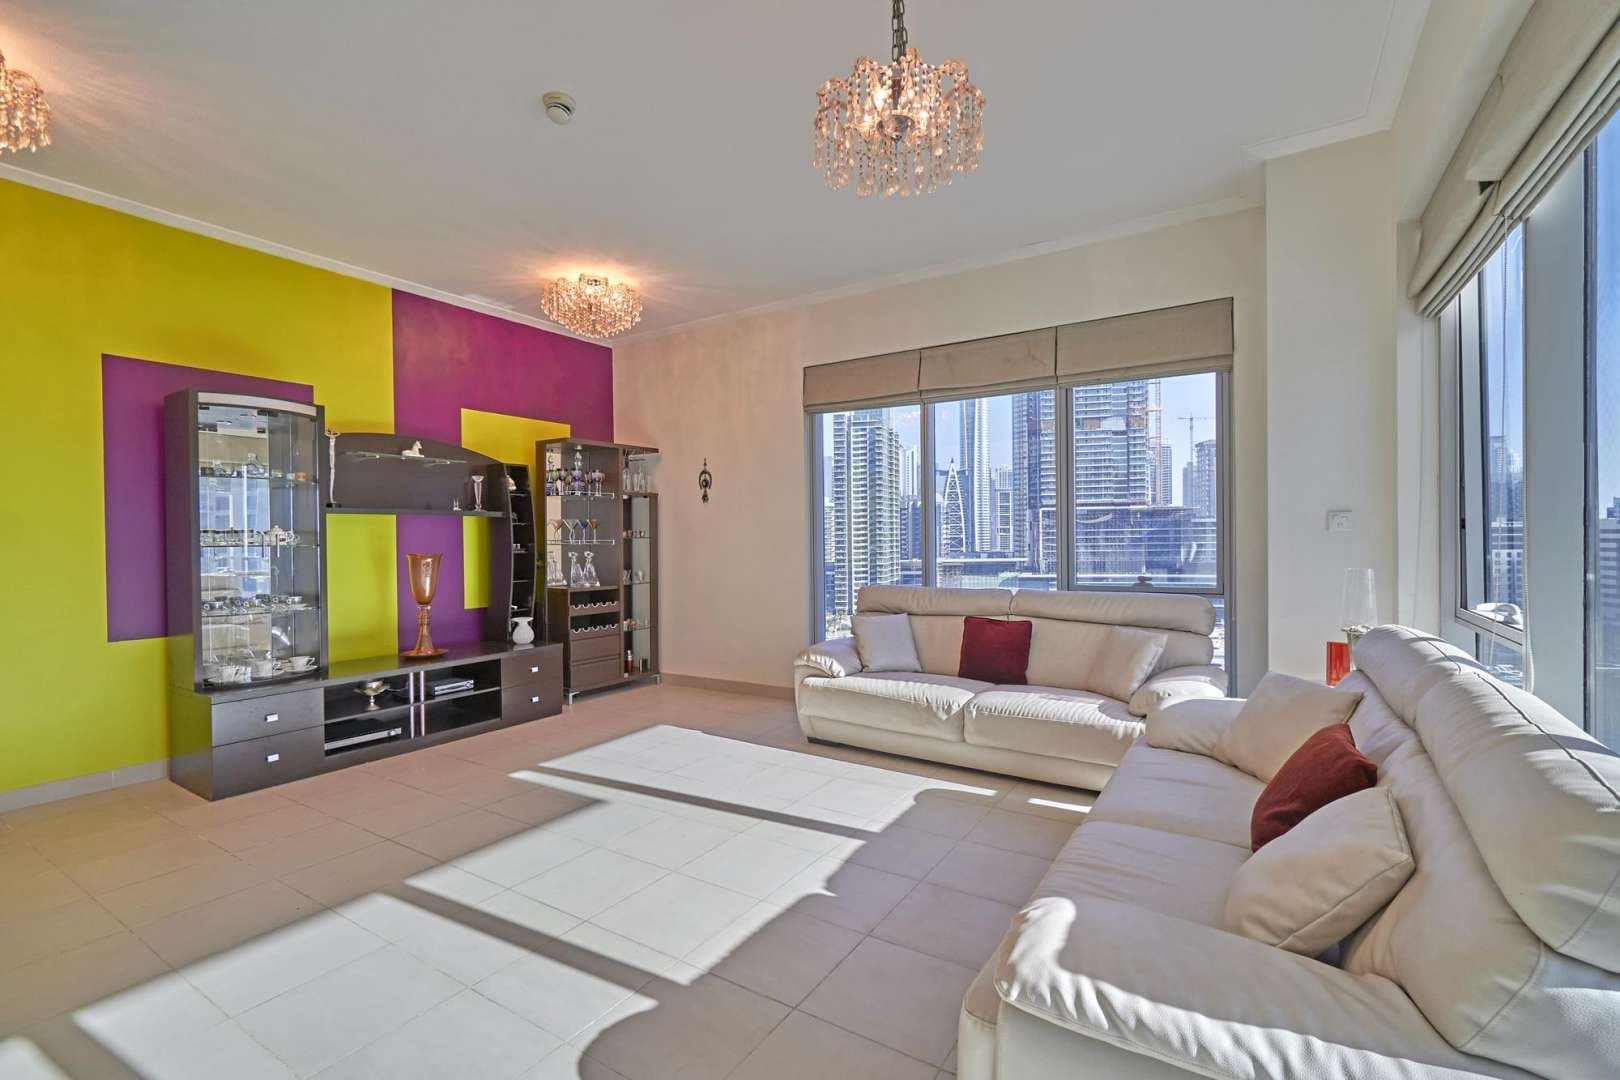 2 Bedroom Apartment For Rent Marina Promenade Lp05797 11b15e8d40936100.jpg